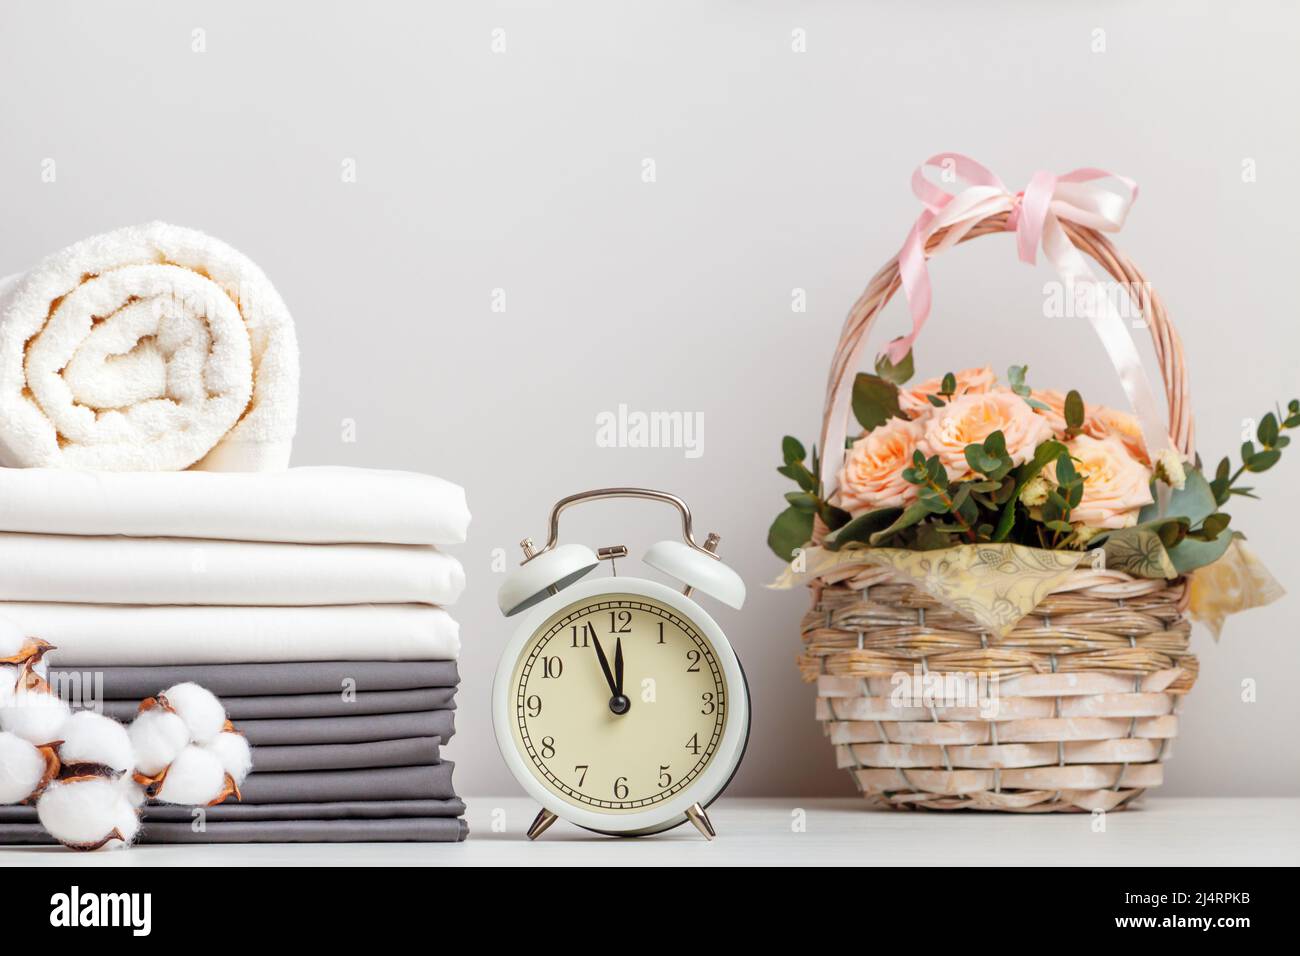 Ein Stapel grauer und weißer Bettwäsche, Laken und ein Frottee-Handtuch. Wecker und ein Blumenkorb auf dem Tisch. Stockfoto